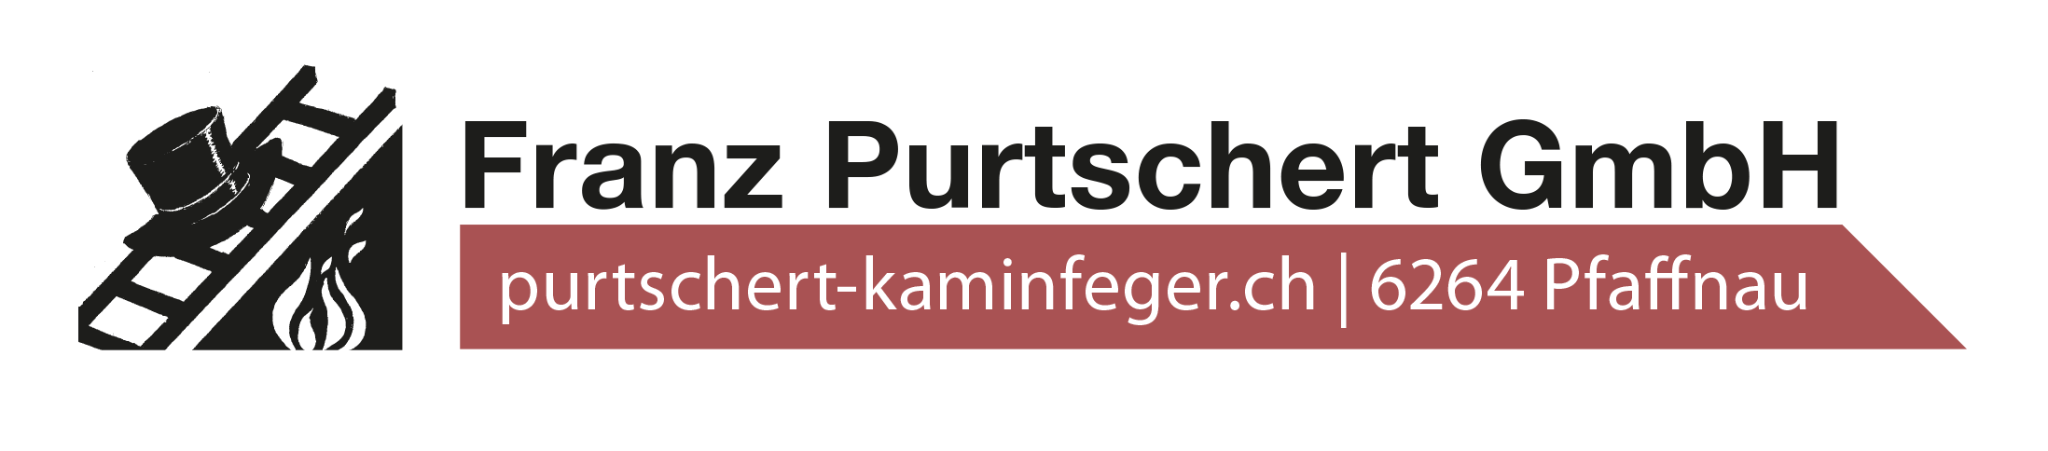 Franz Purtschert GmbH